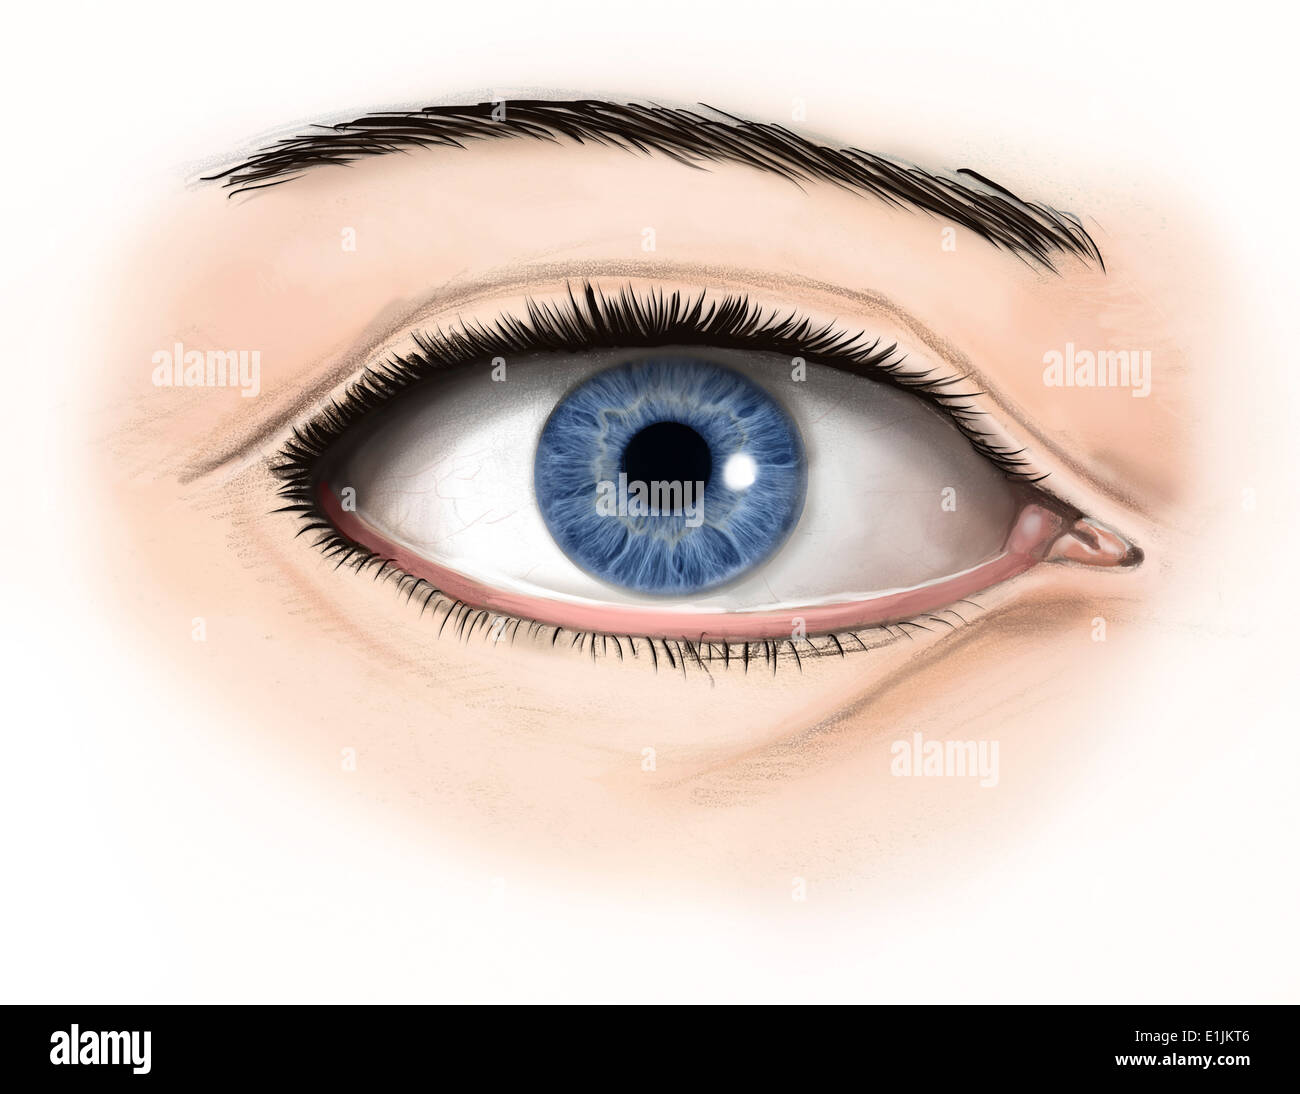 Anatomie externe de l'œil humain. Banque D'Images